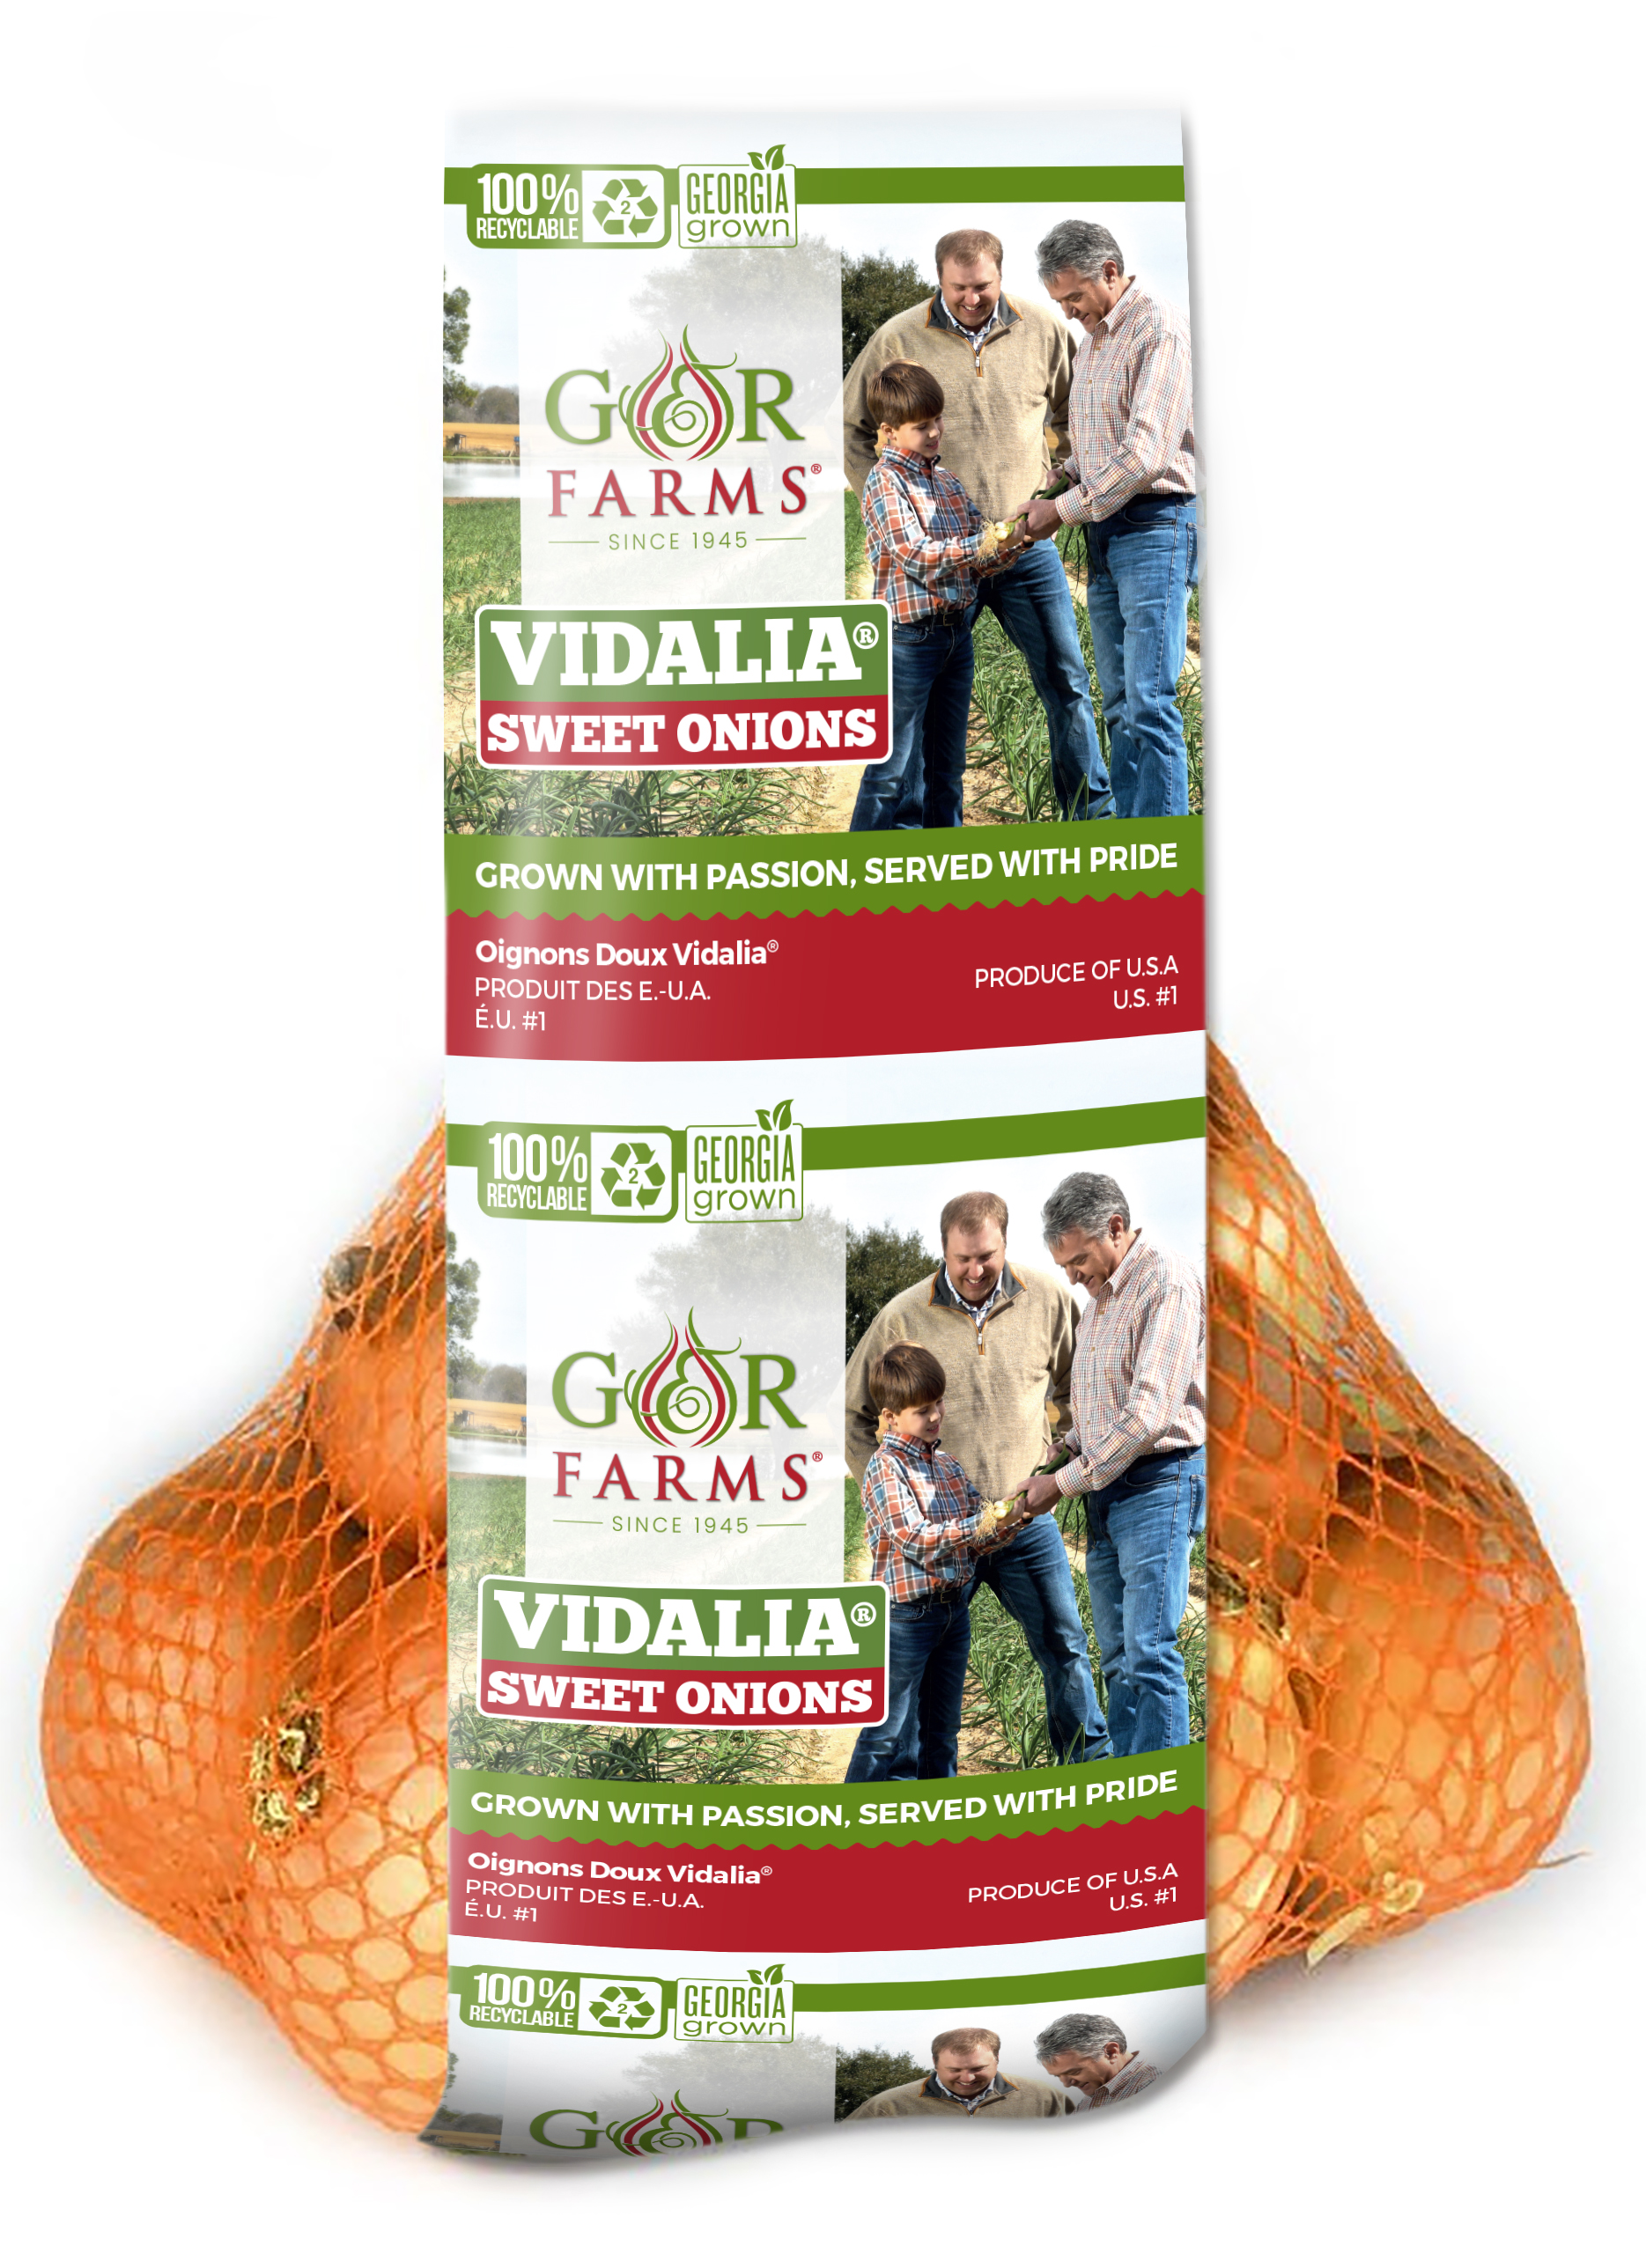 Vidalia Onion packaging